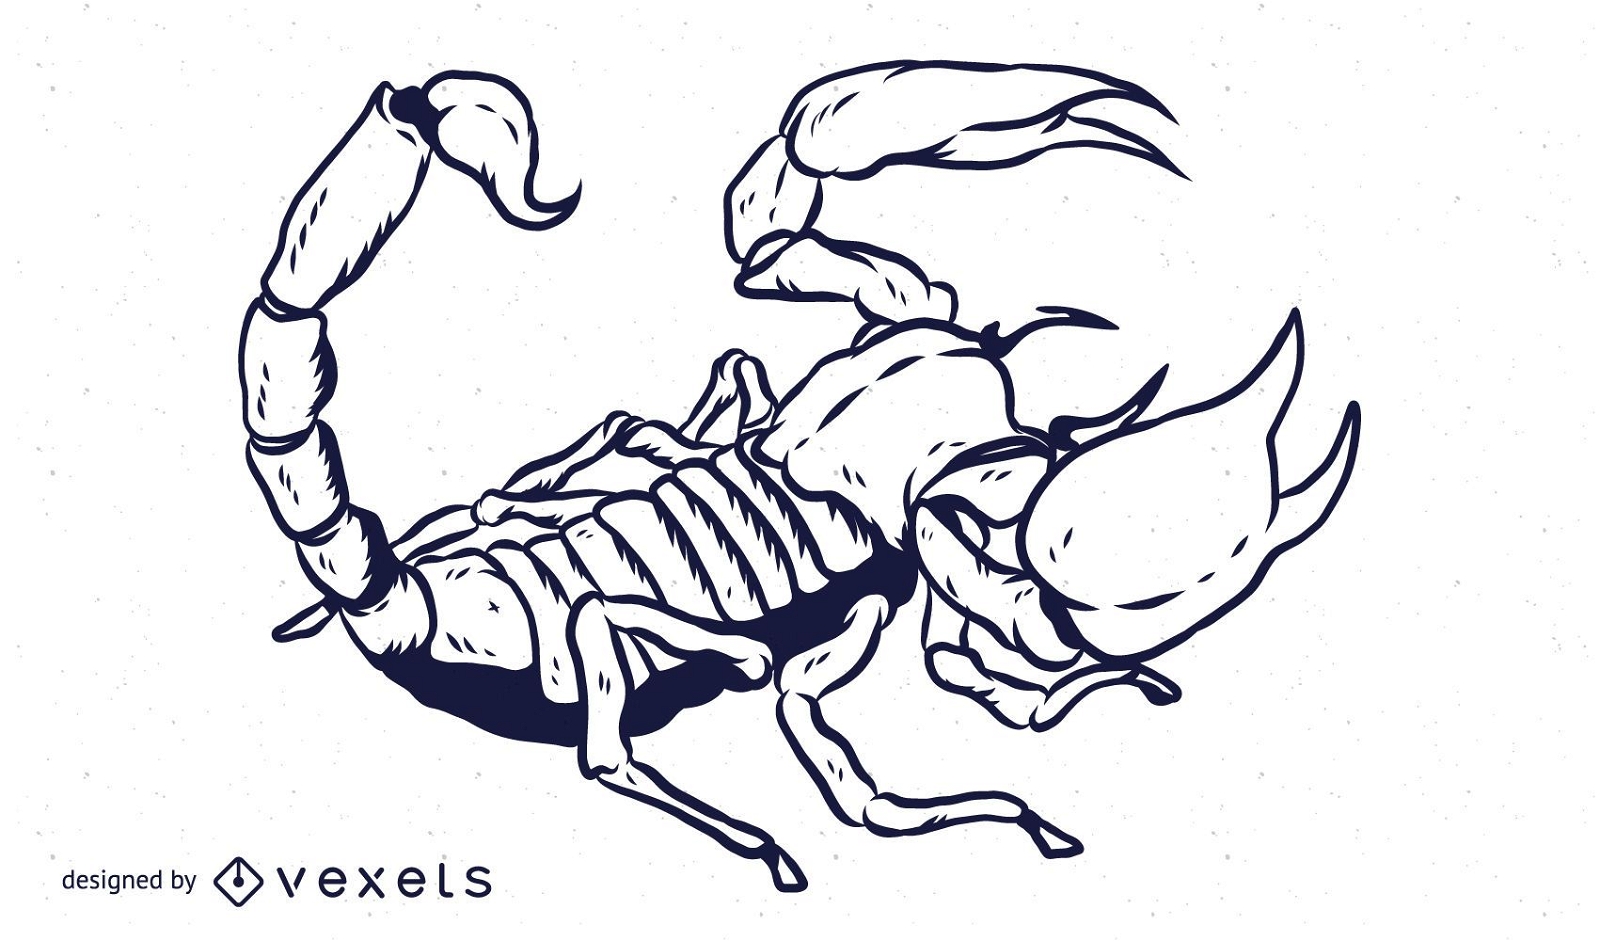 Skorpion handgezeichnetes Umrissdesign